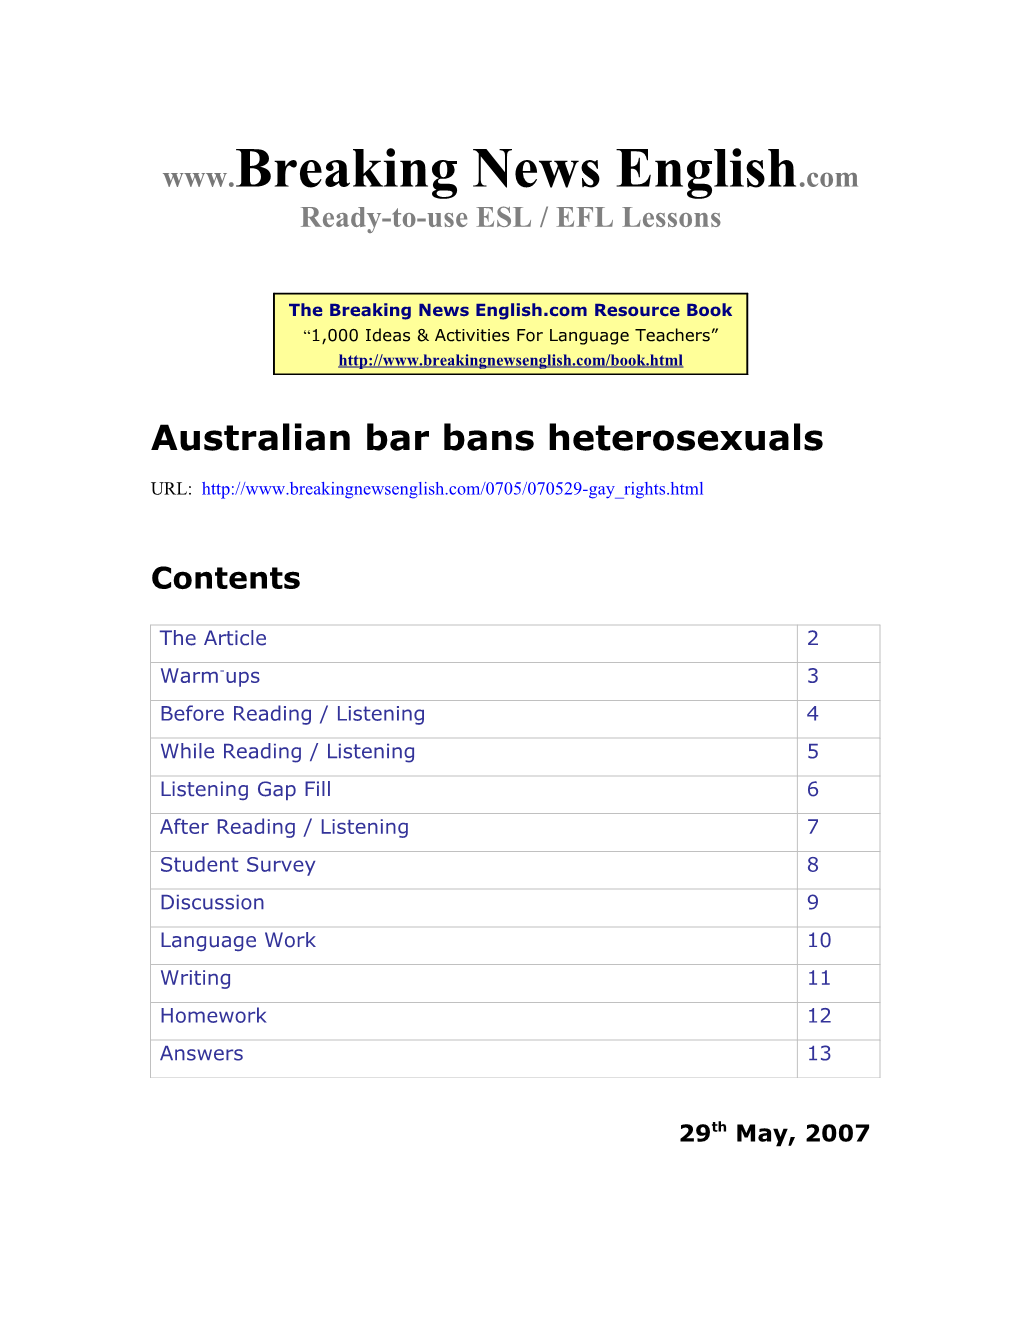 Australian Bar Bans Heterosexuals